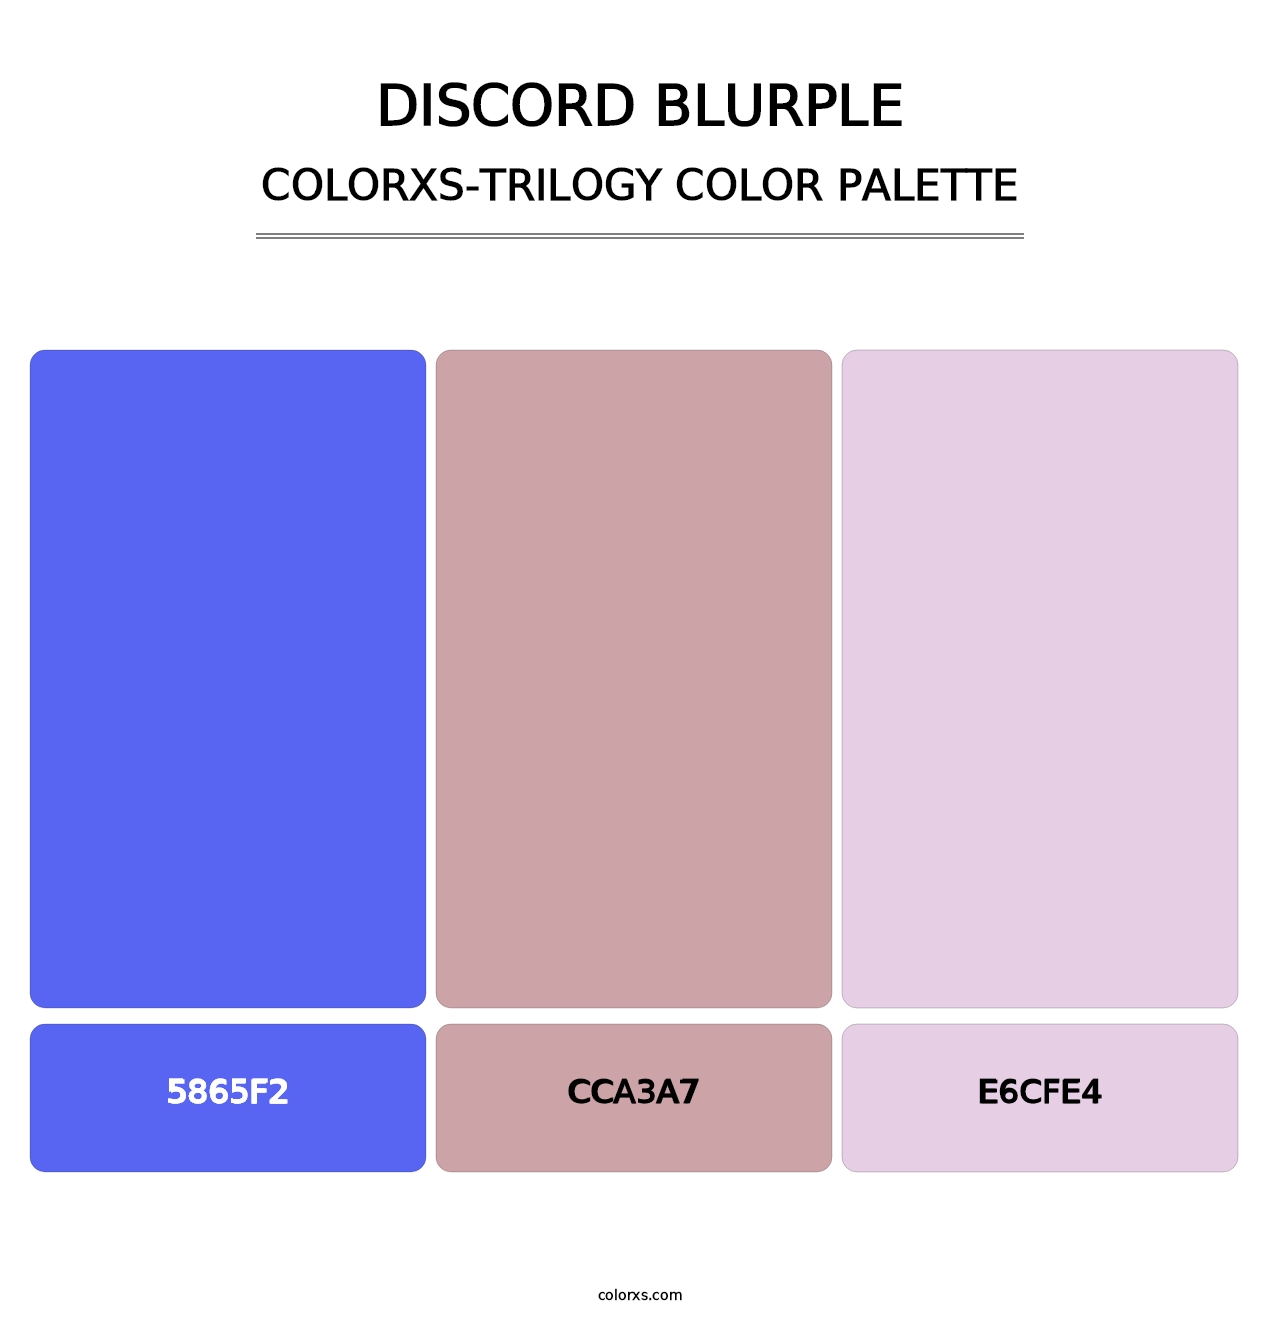 Discord Blurple - Colorxs Trilogy Palette